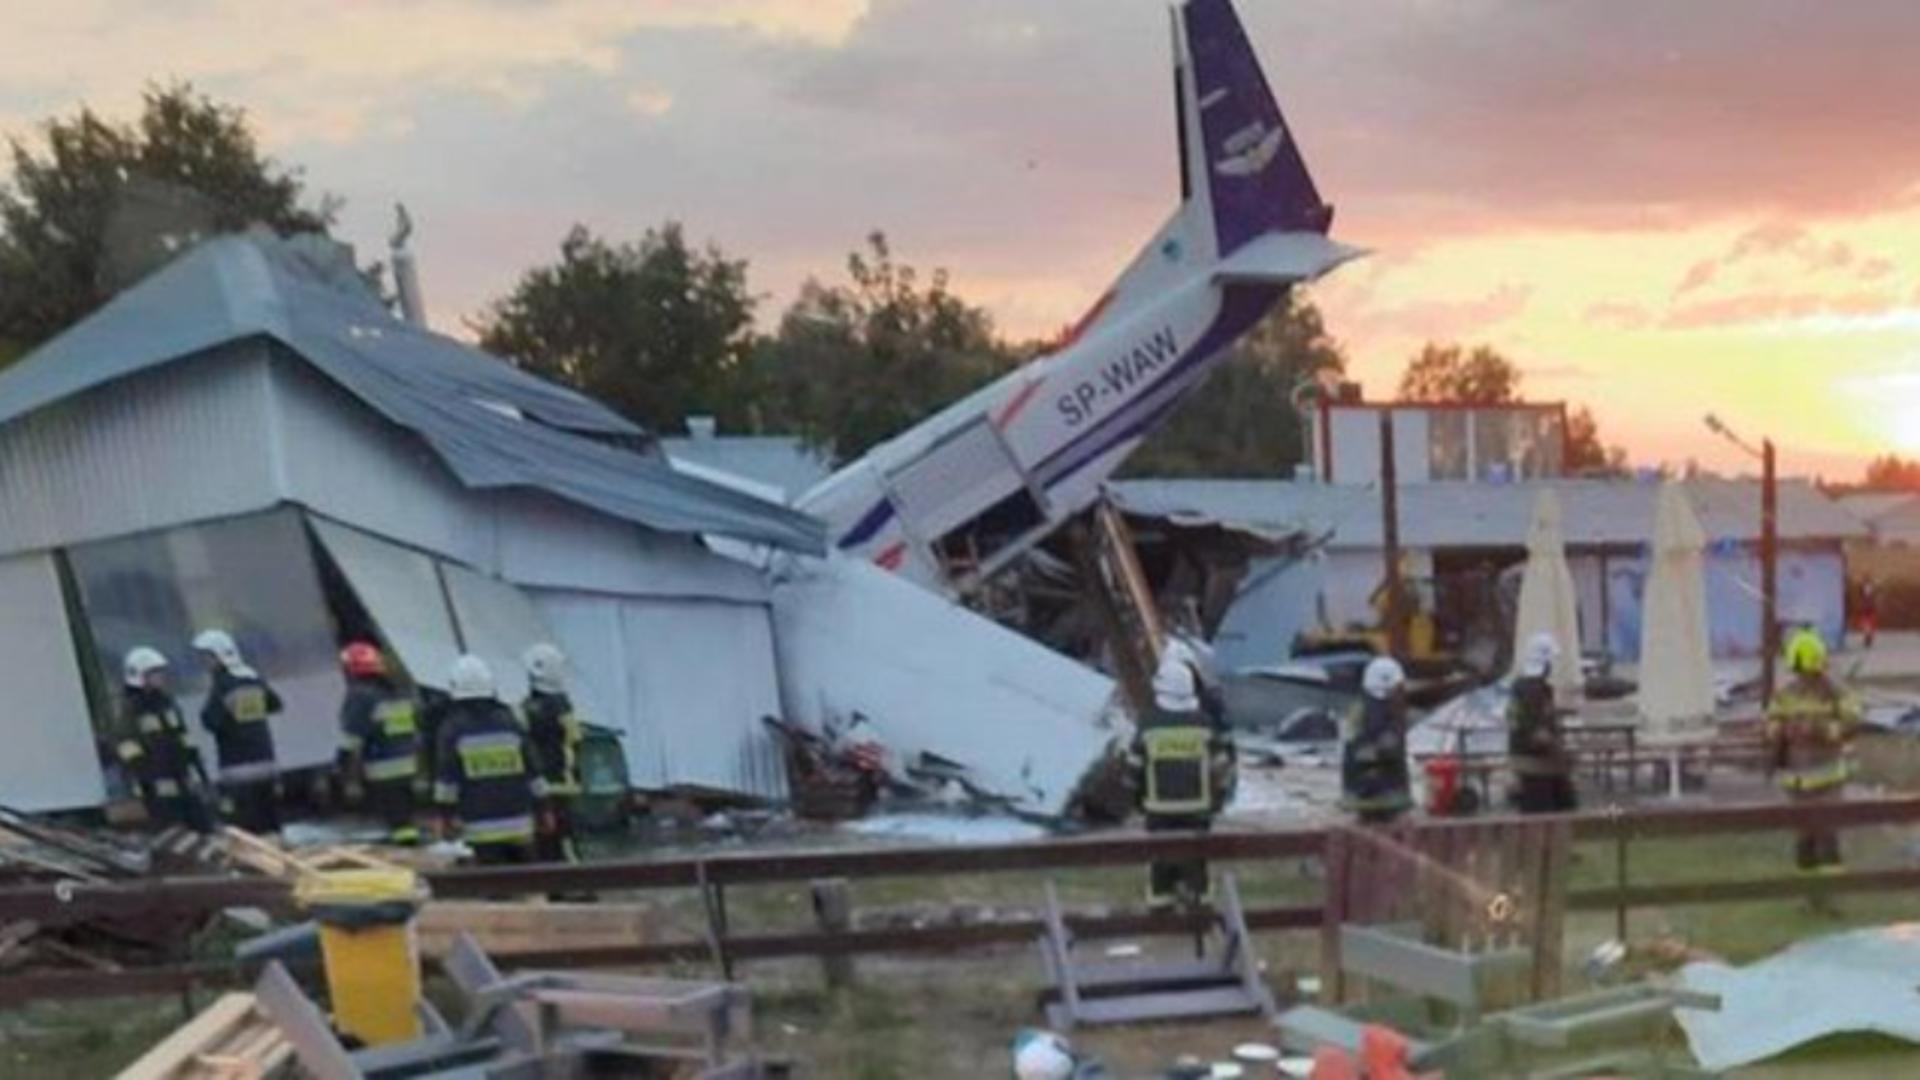 Tragedie în Polonia: Un avion de mici dimensiuni s-a prăbușit pe un hangar - 5 morți și peste 7 răniți - FOTO